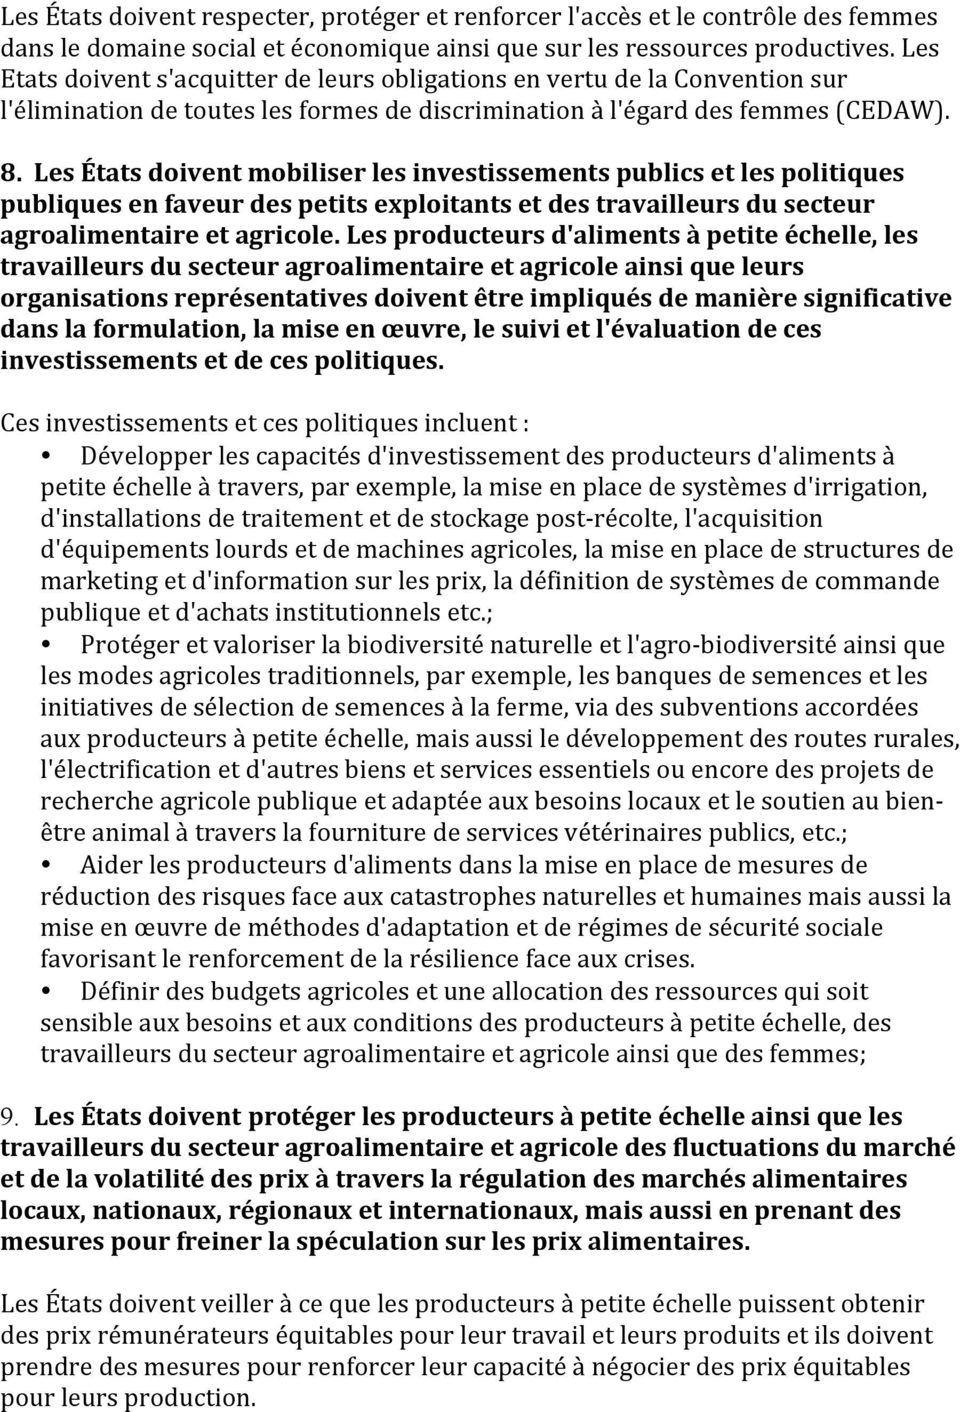 Les États doivent mobiliser les investissements publics et les politiques publiques en faveur des petits exploitants et des travailleurs du secteur agroalimentaire et agricole.